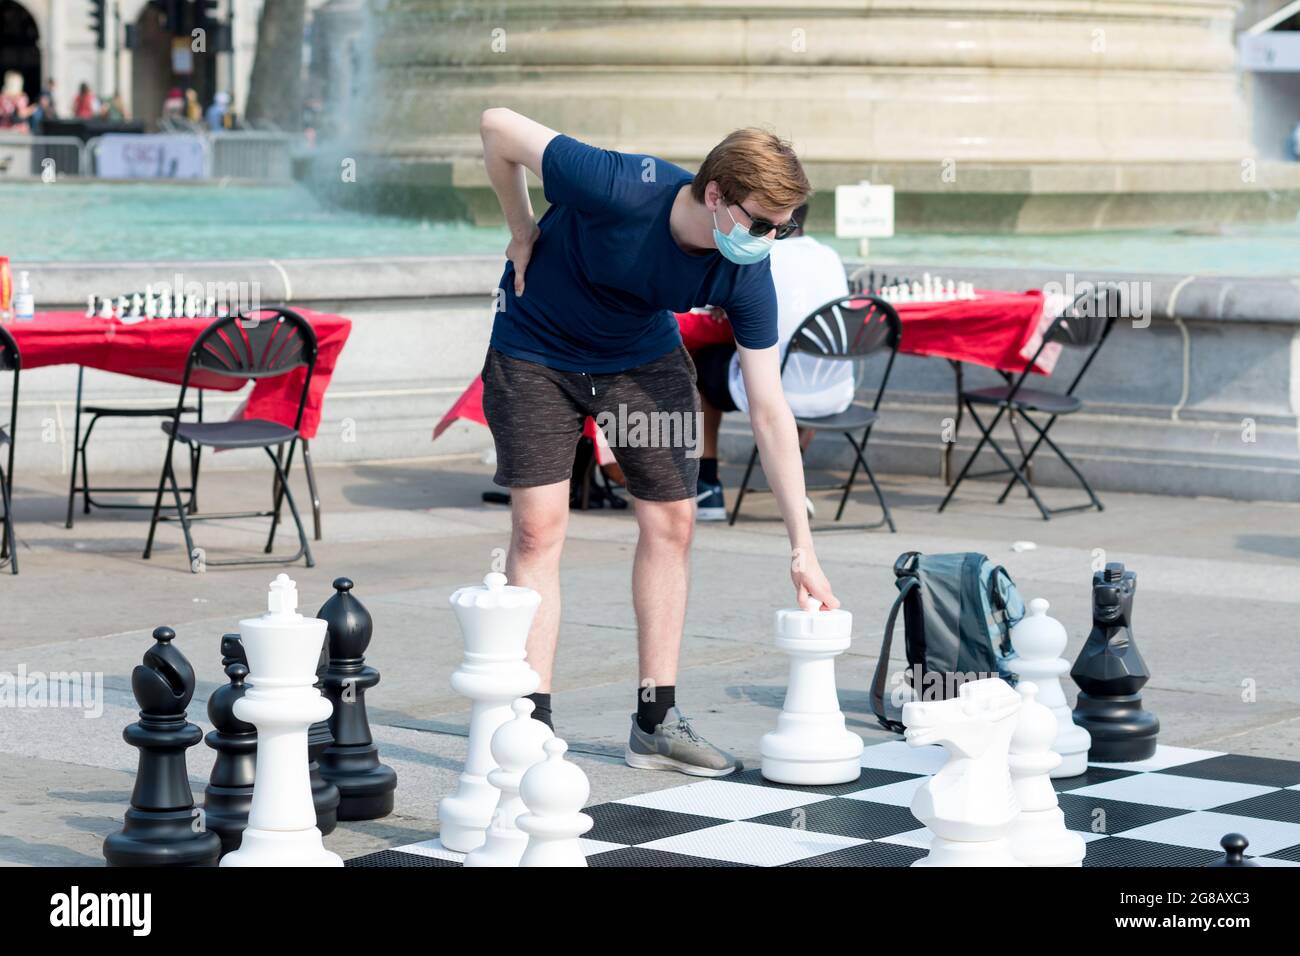 Riesenschach Spiel London Stockfotos und -bilder Kaufen - Alamy